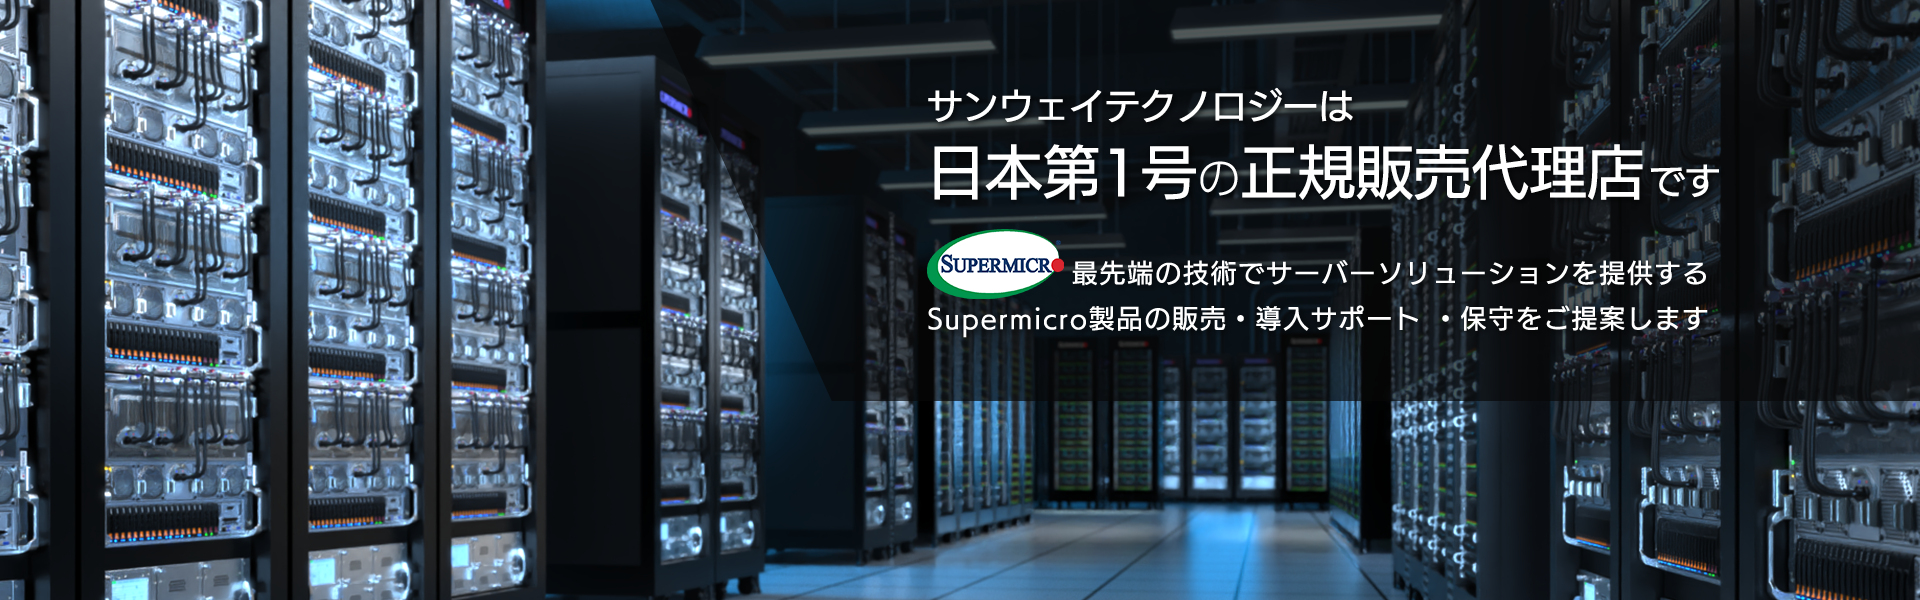 Supermicro：マザーボード：X9SRA | サンウェイテクノロジー株式会社